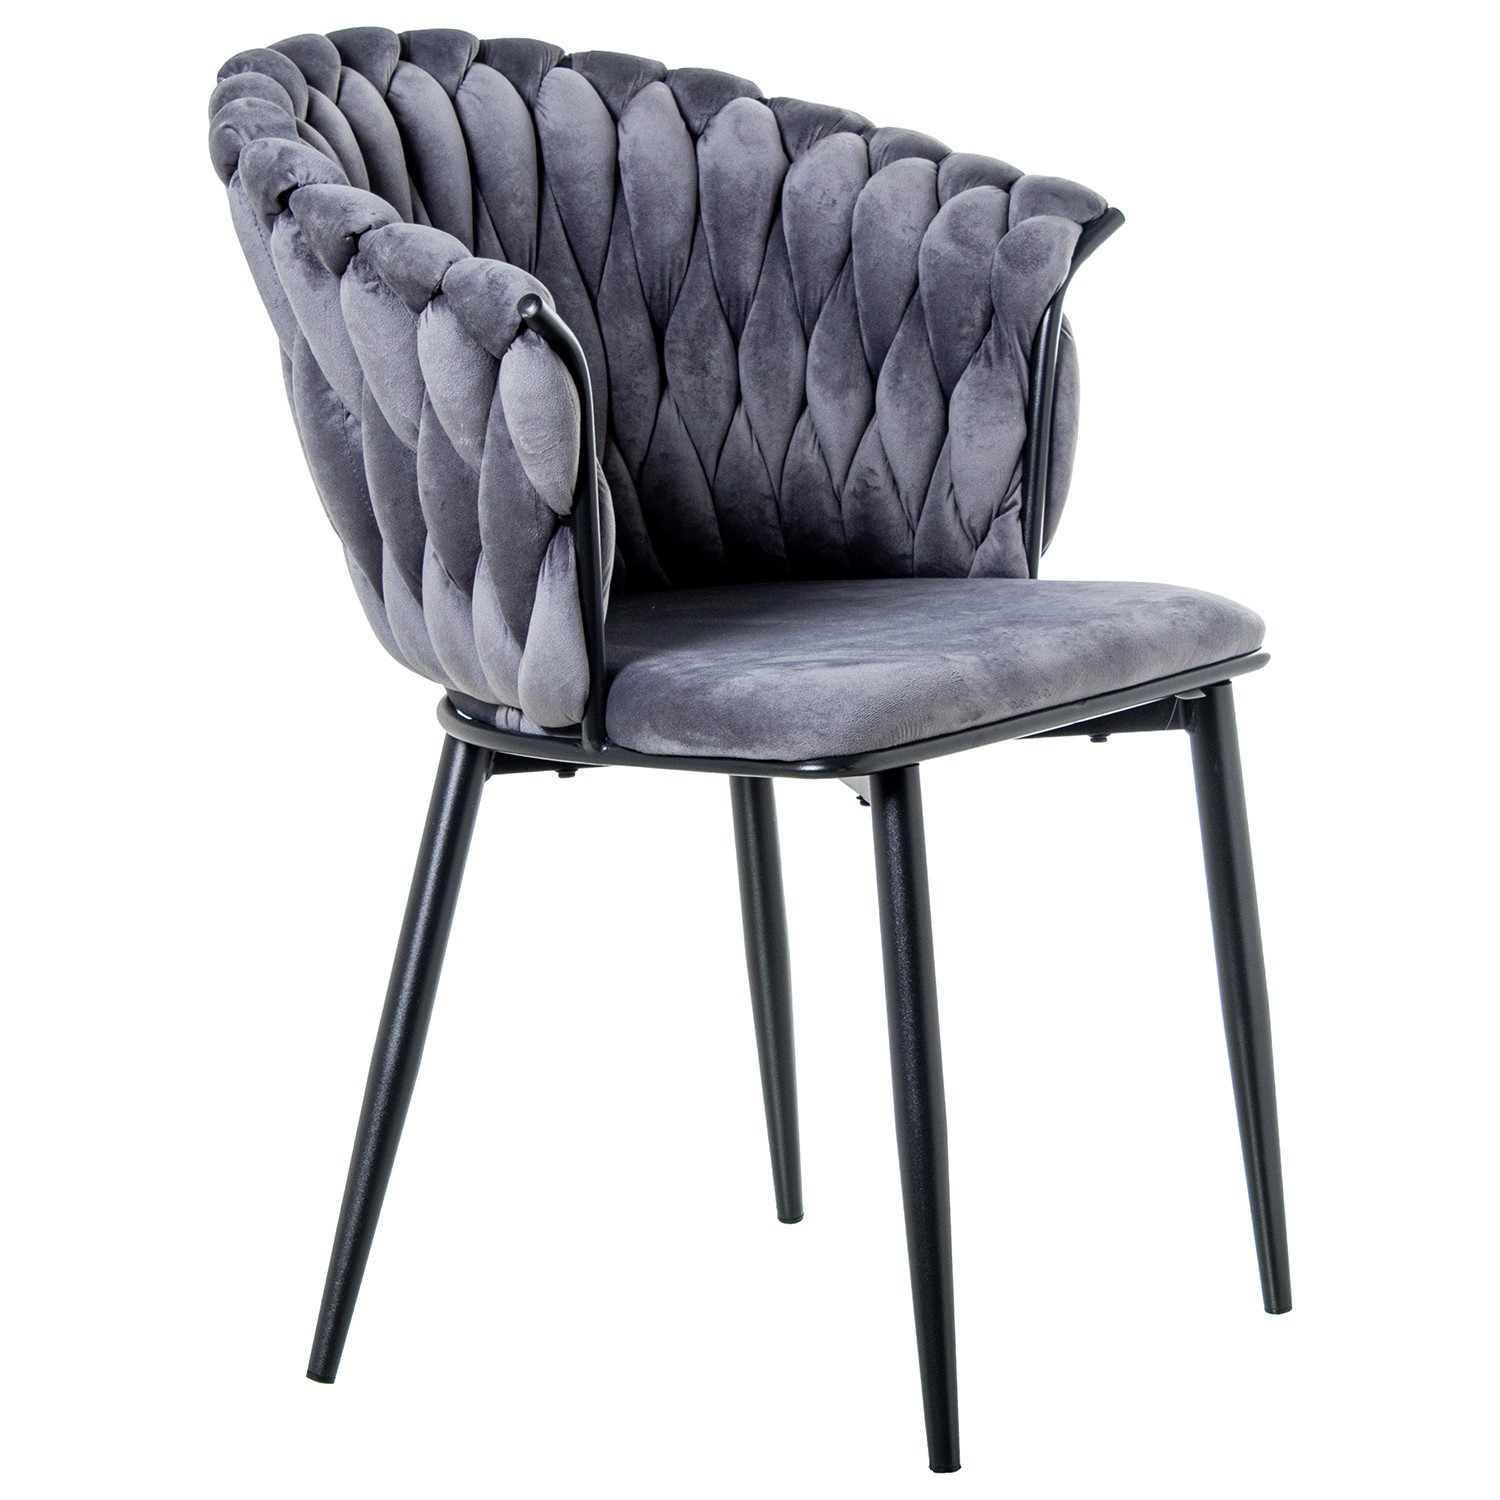 35326-silla-terciopelo-trenzado-gris-negro.jpg